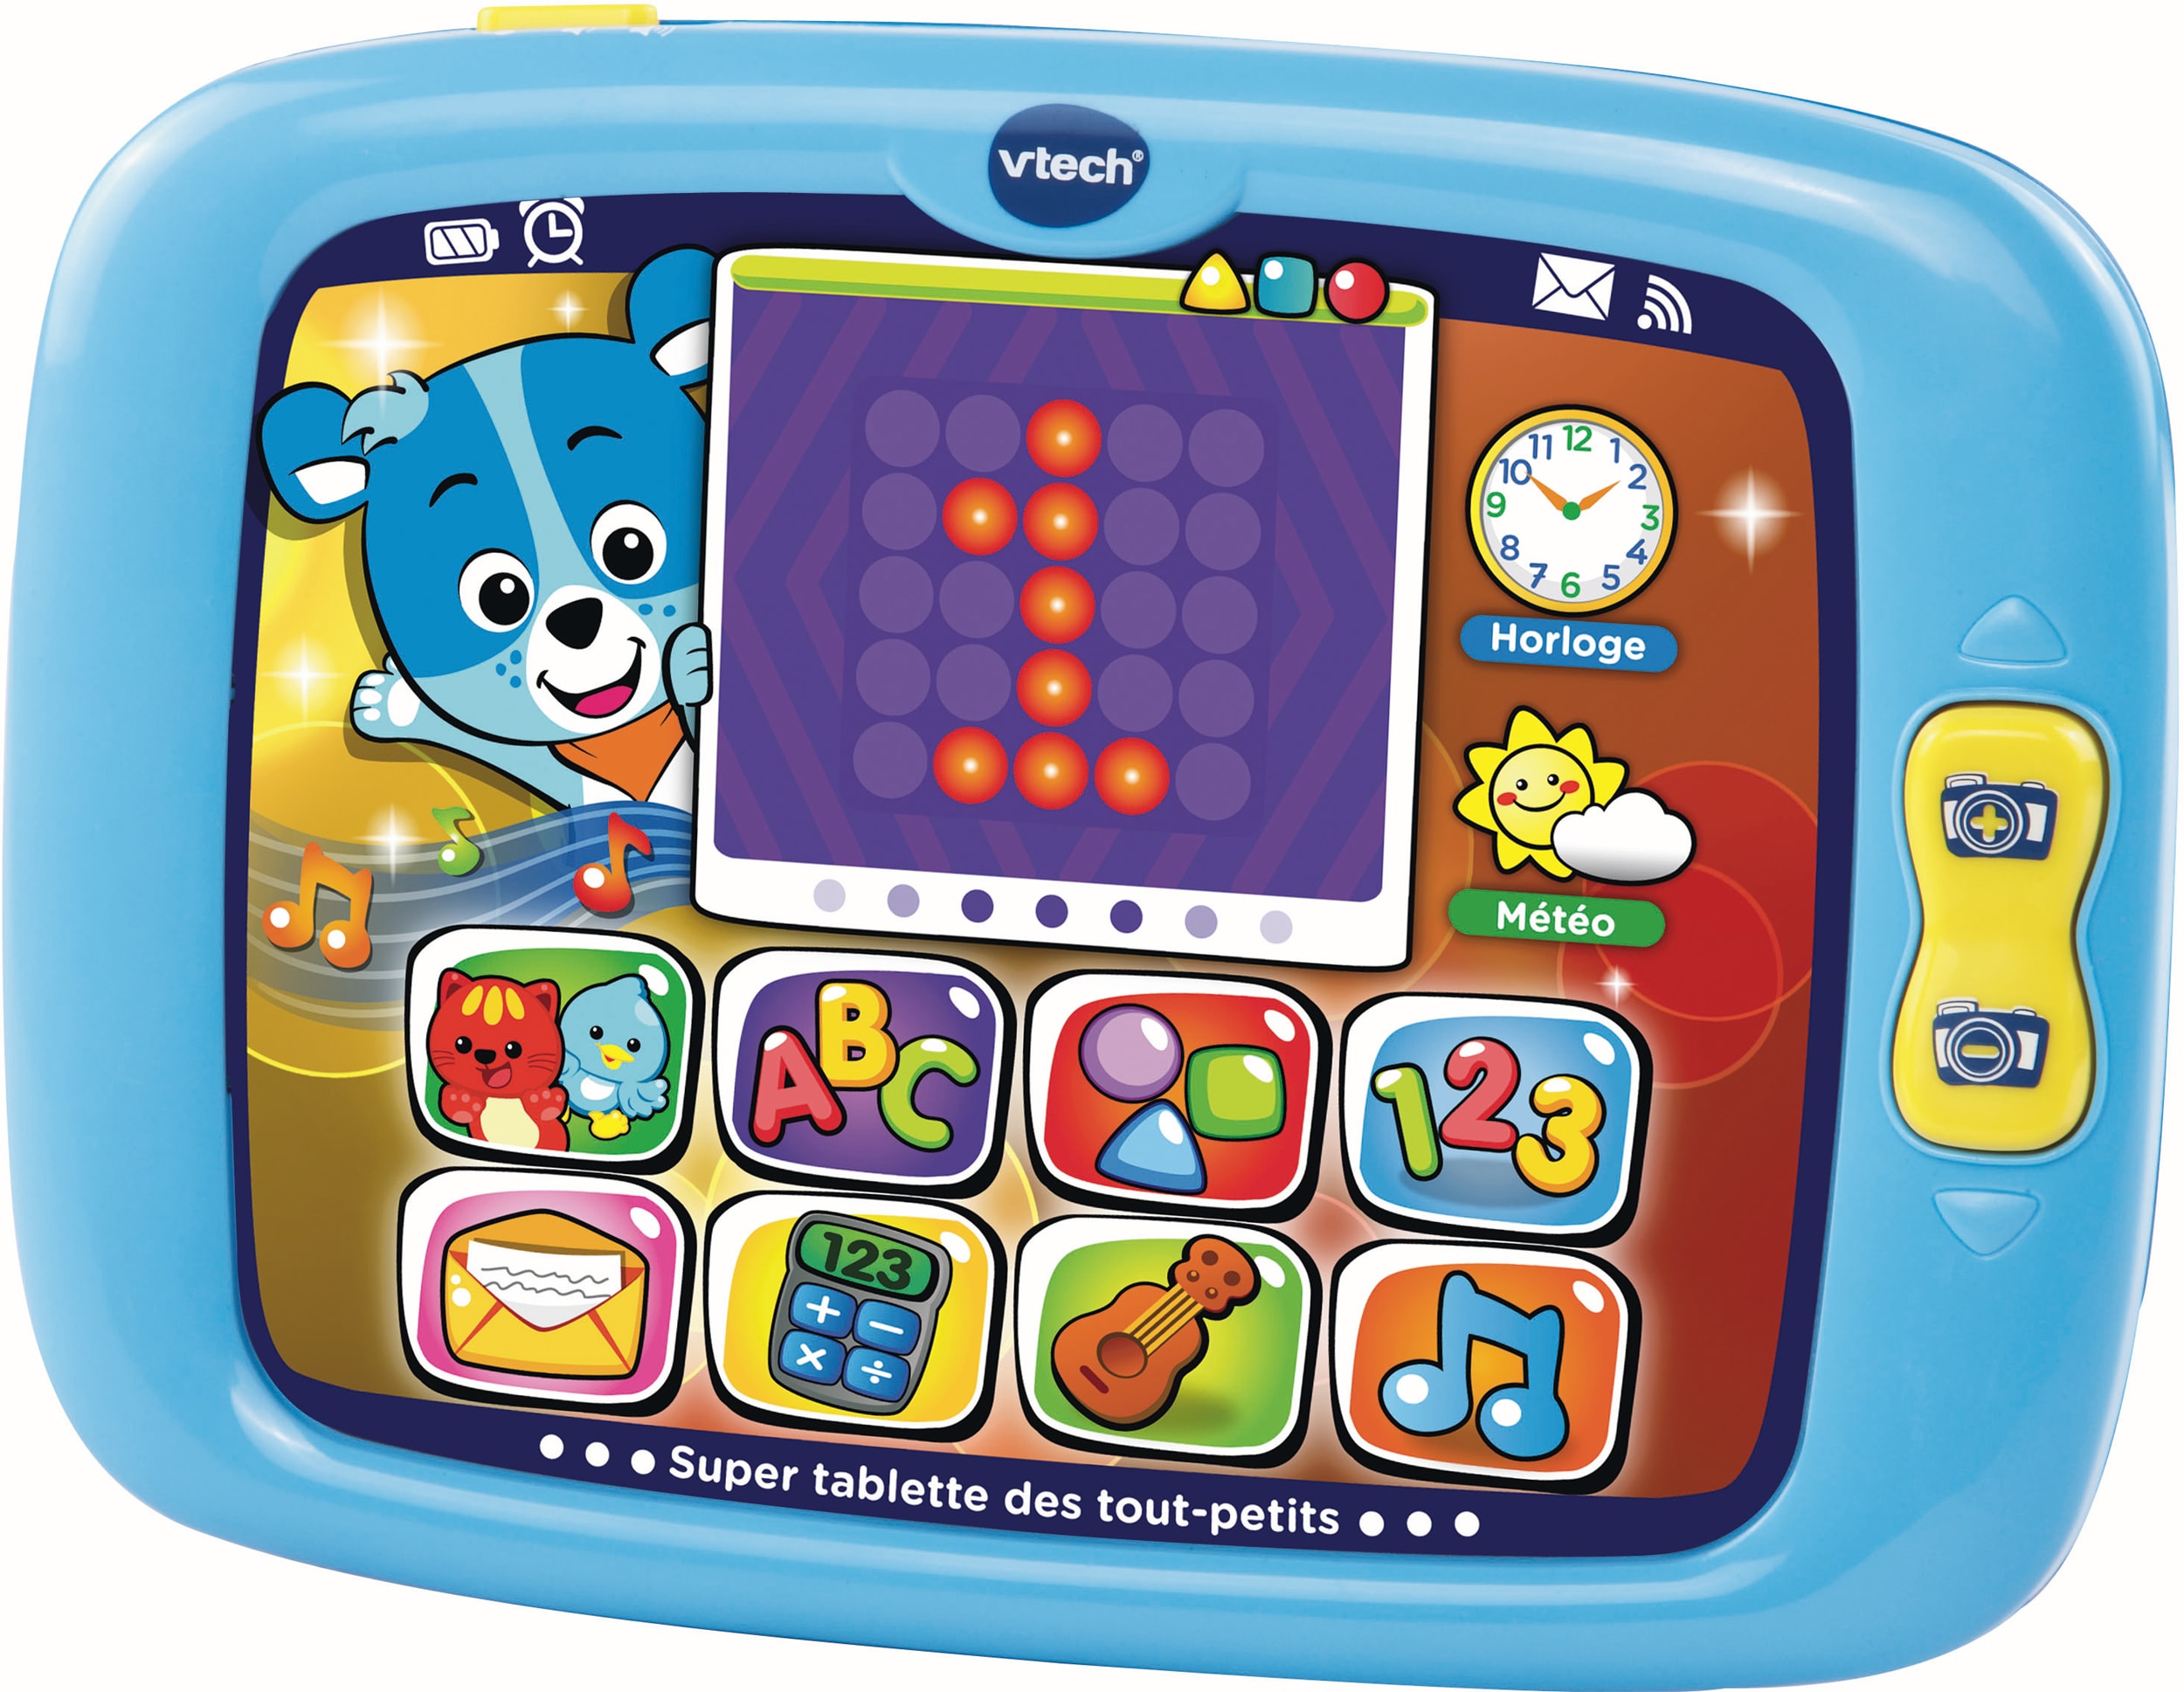 VTECH Super Tablette des tout petits Nino 151405 - Tablette tactile enfant  Pas Cher